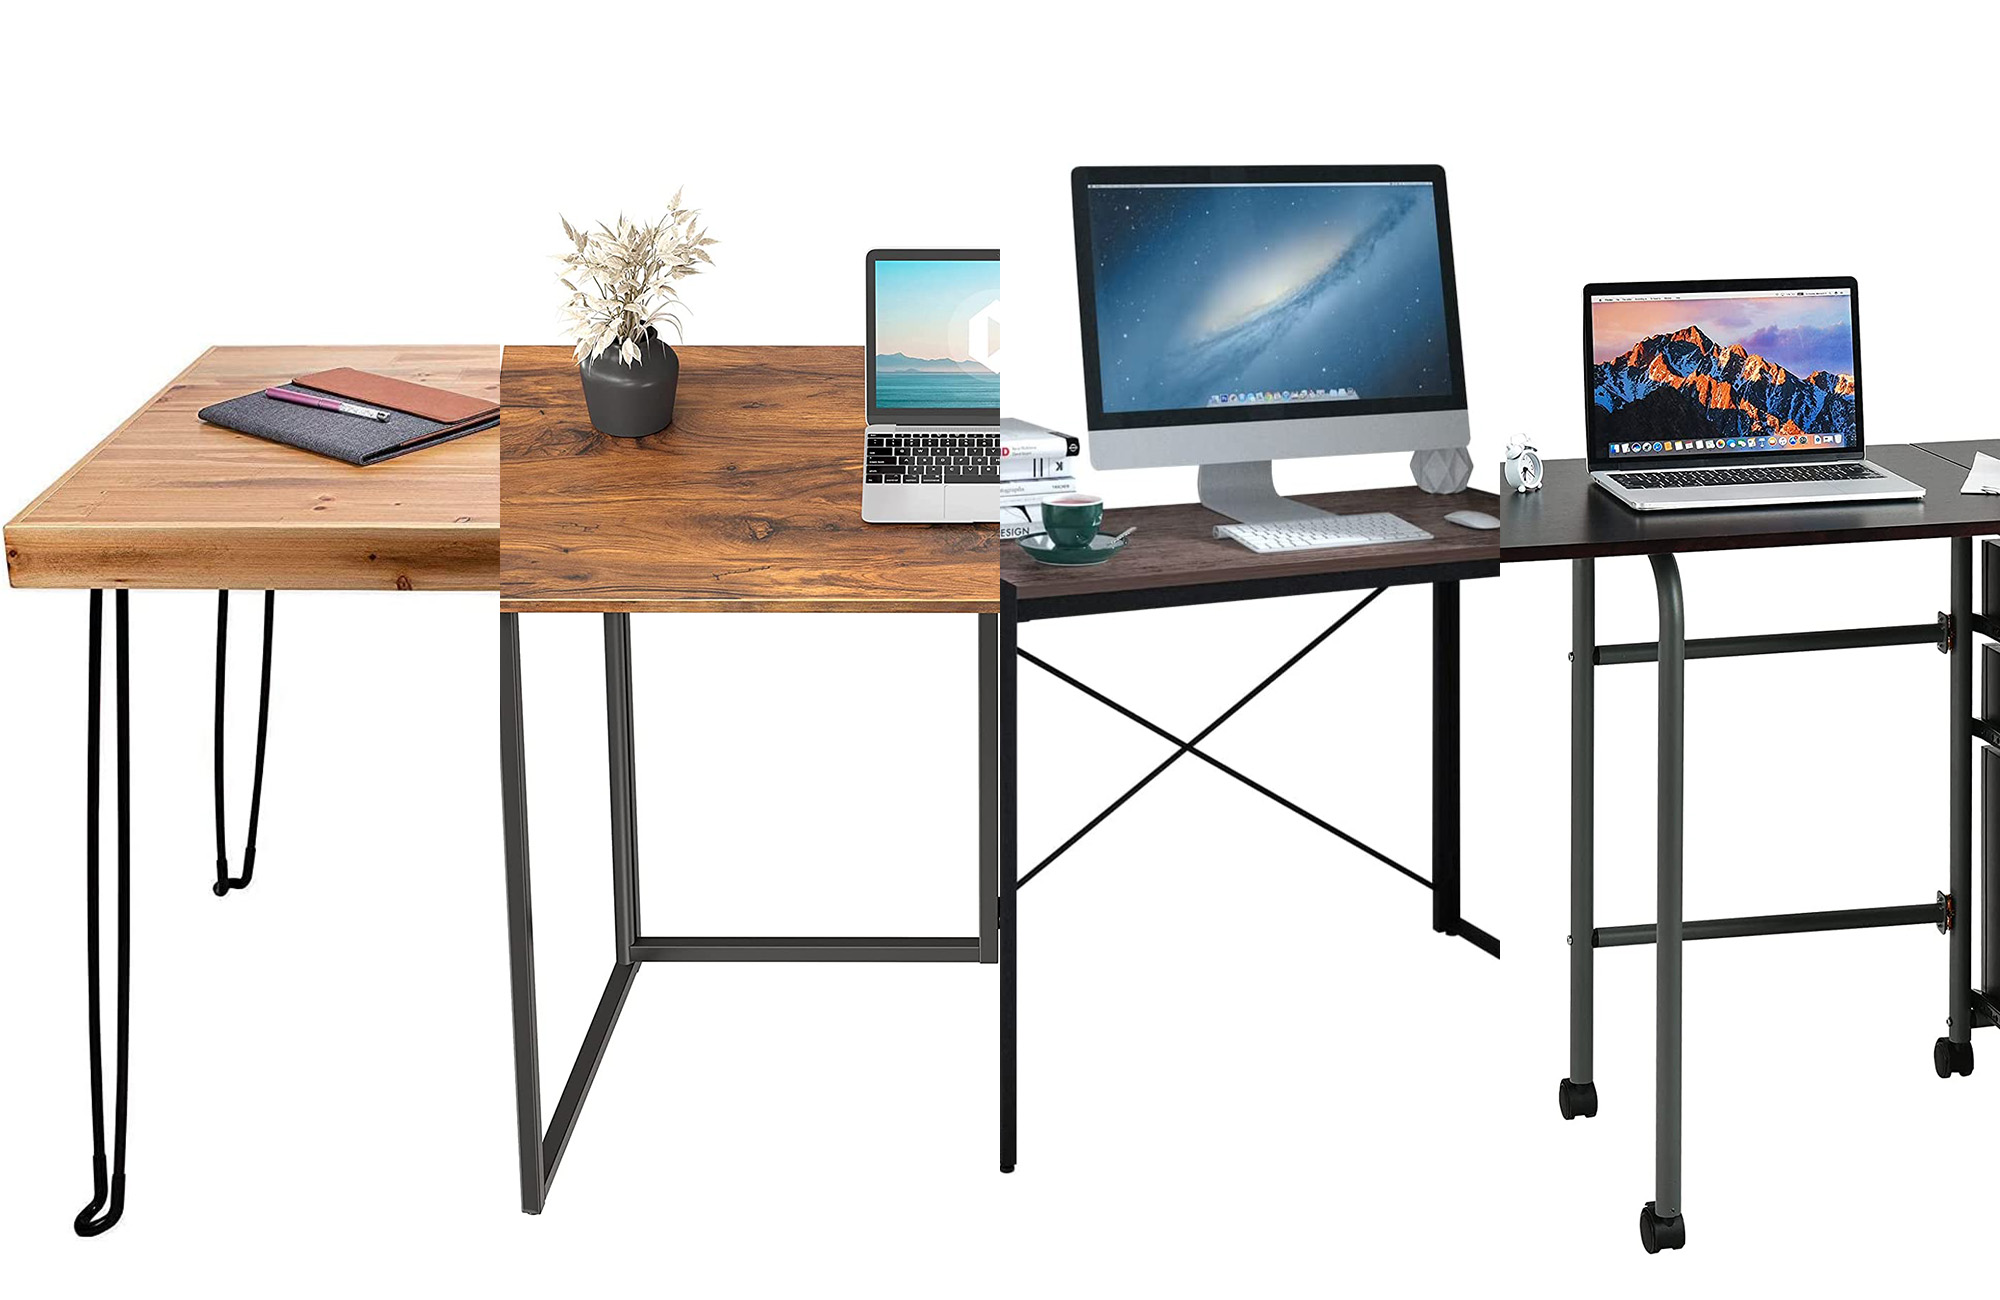 A lineup of the best folding desks